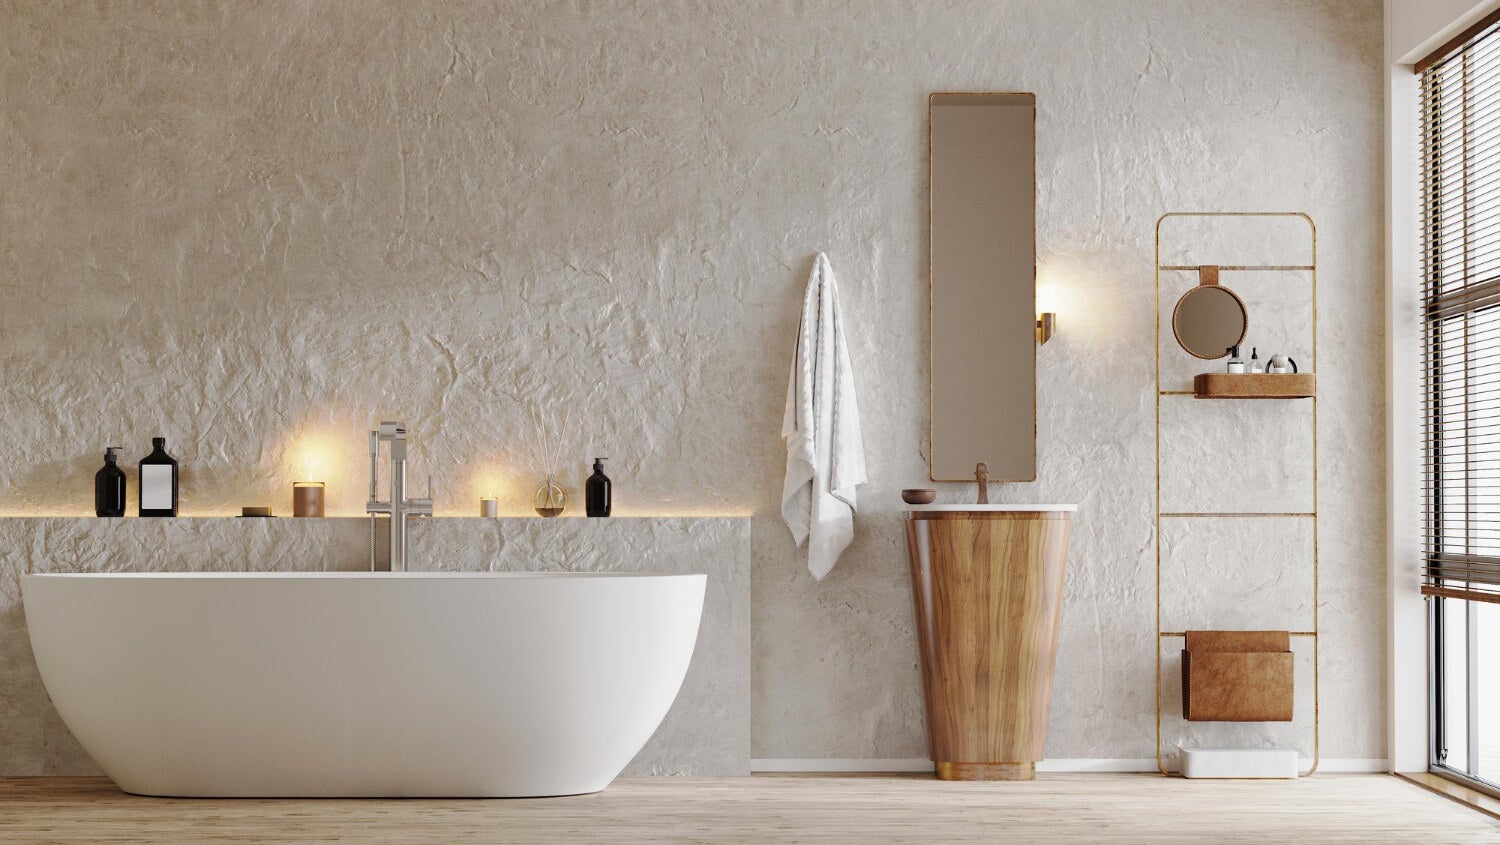 Cómo crear combinaciones de azulejos para baños armoniosas